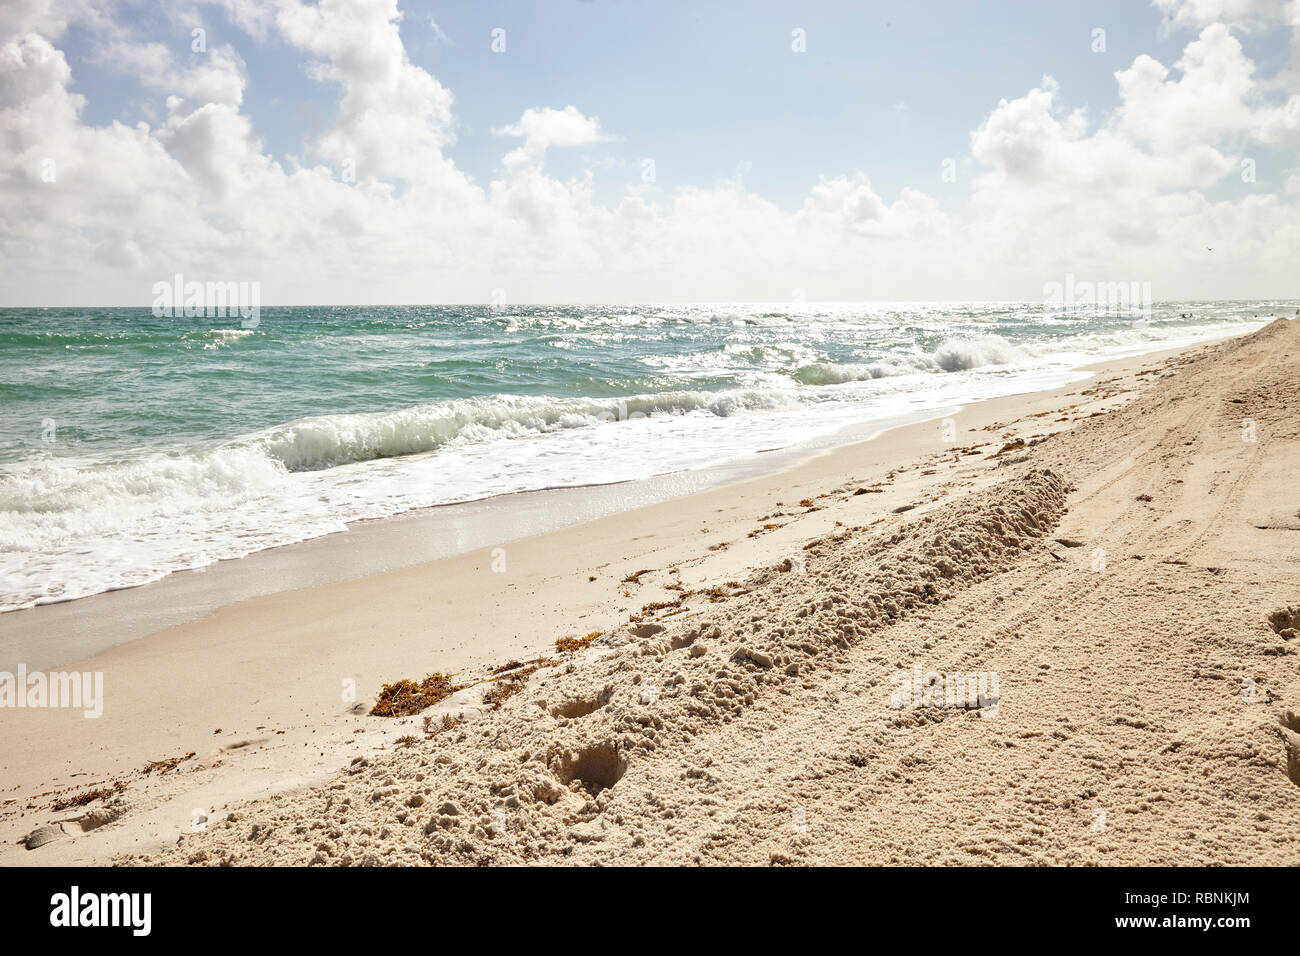 Oceano onde che si infrangono sulla sabbia vuoto Spagnolo Spiaggia Foto Stock